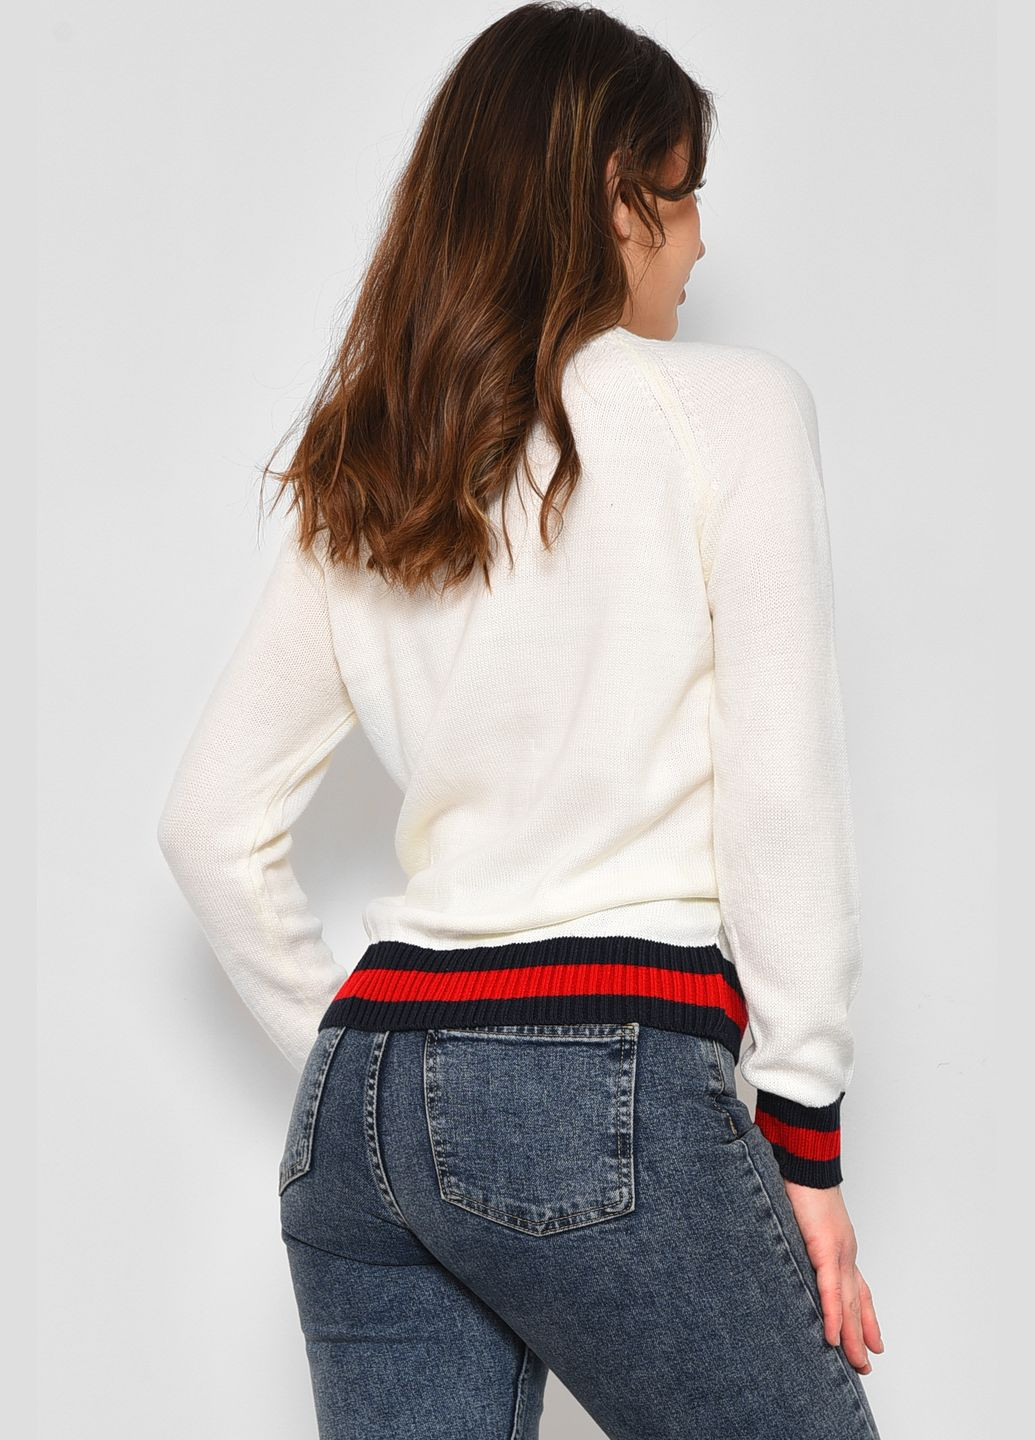 Белый демисезонный свитер женский белого цвета пуловер Let's Shop